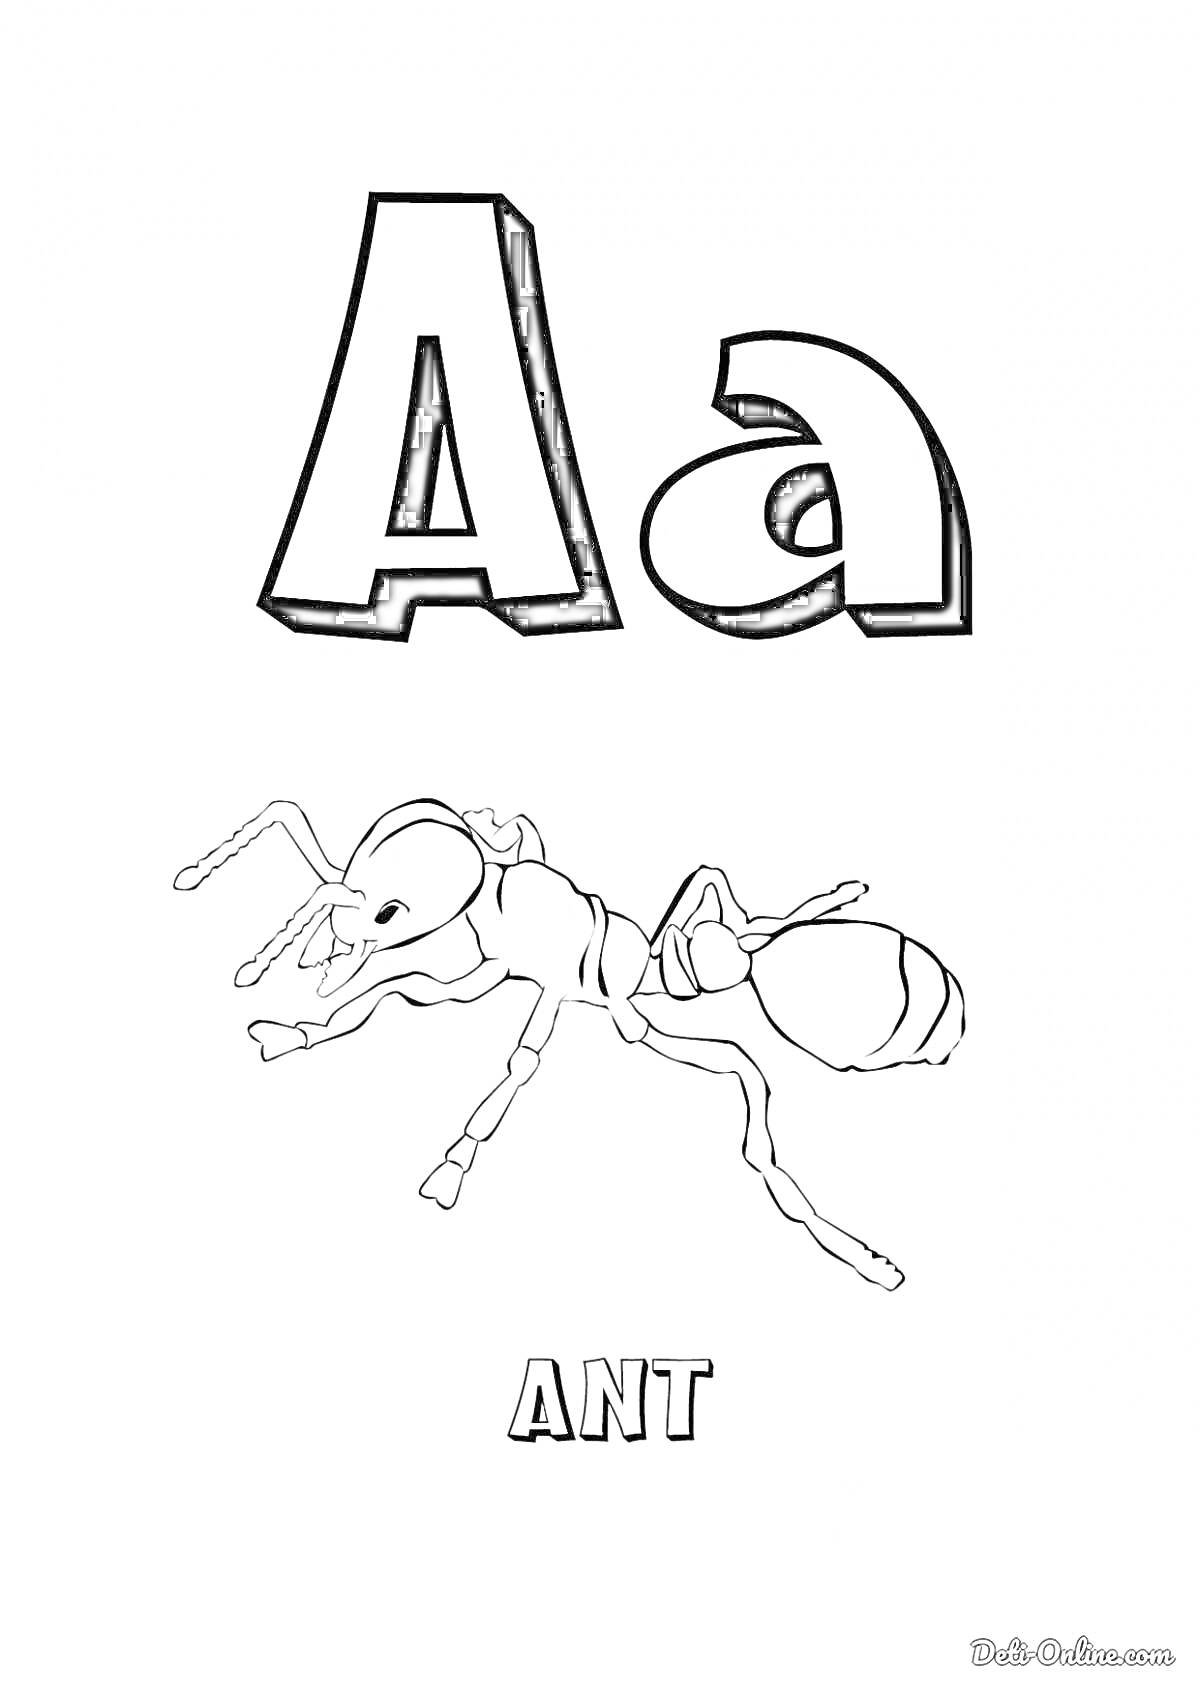 Раскраска Буква A с изображением муравья и словом ANT